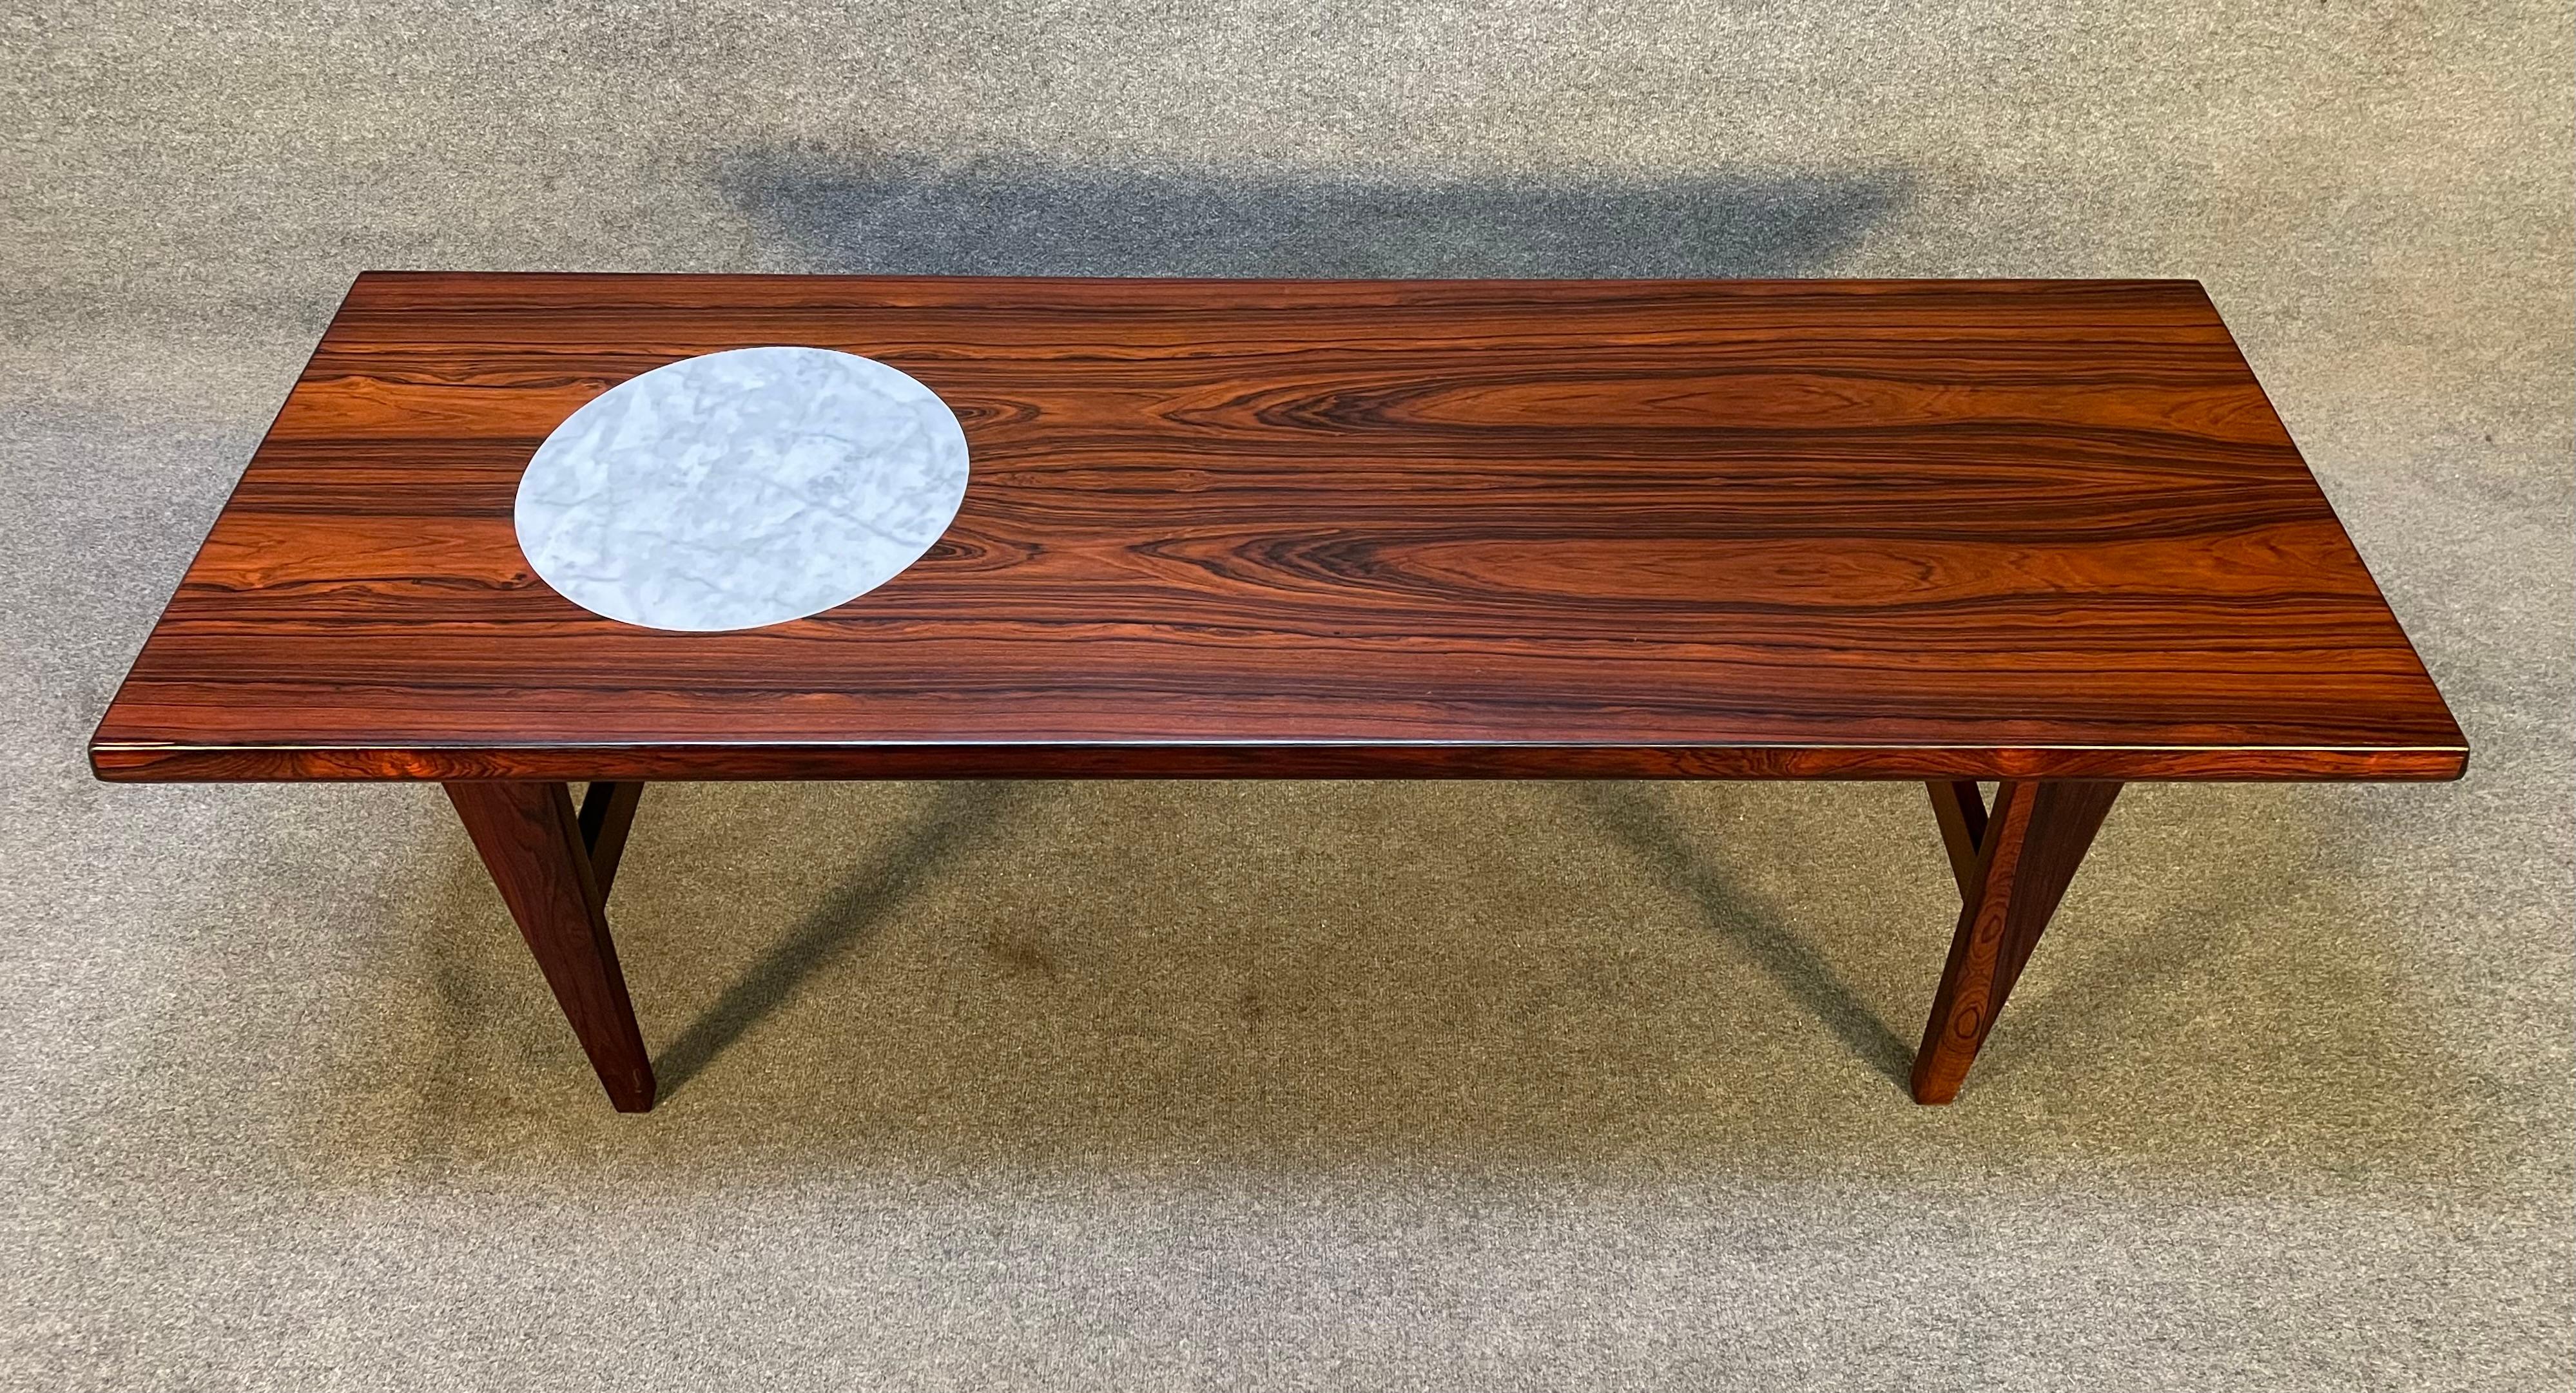 Voici une belle table de cocktail moderne scandinave des années 1960 en bois de rose fabriquée au Danemark et récemment importée en Californie avant sa remise en état.
Cette table spéciale présente un grain de bois vibrant, un insert en marbre